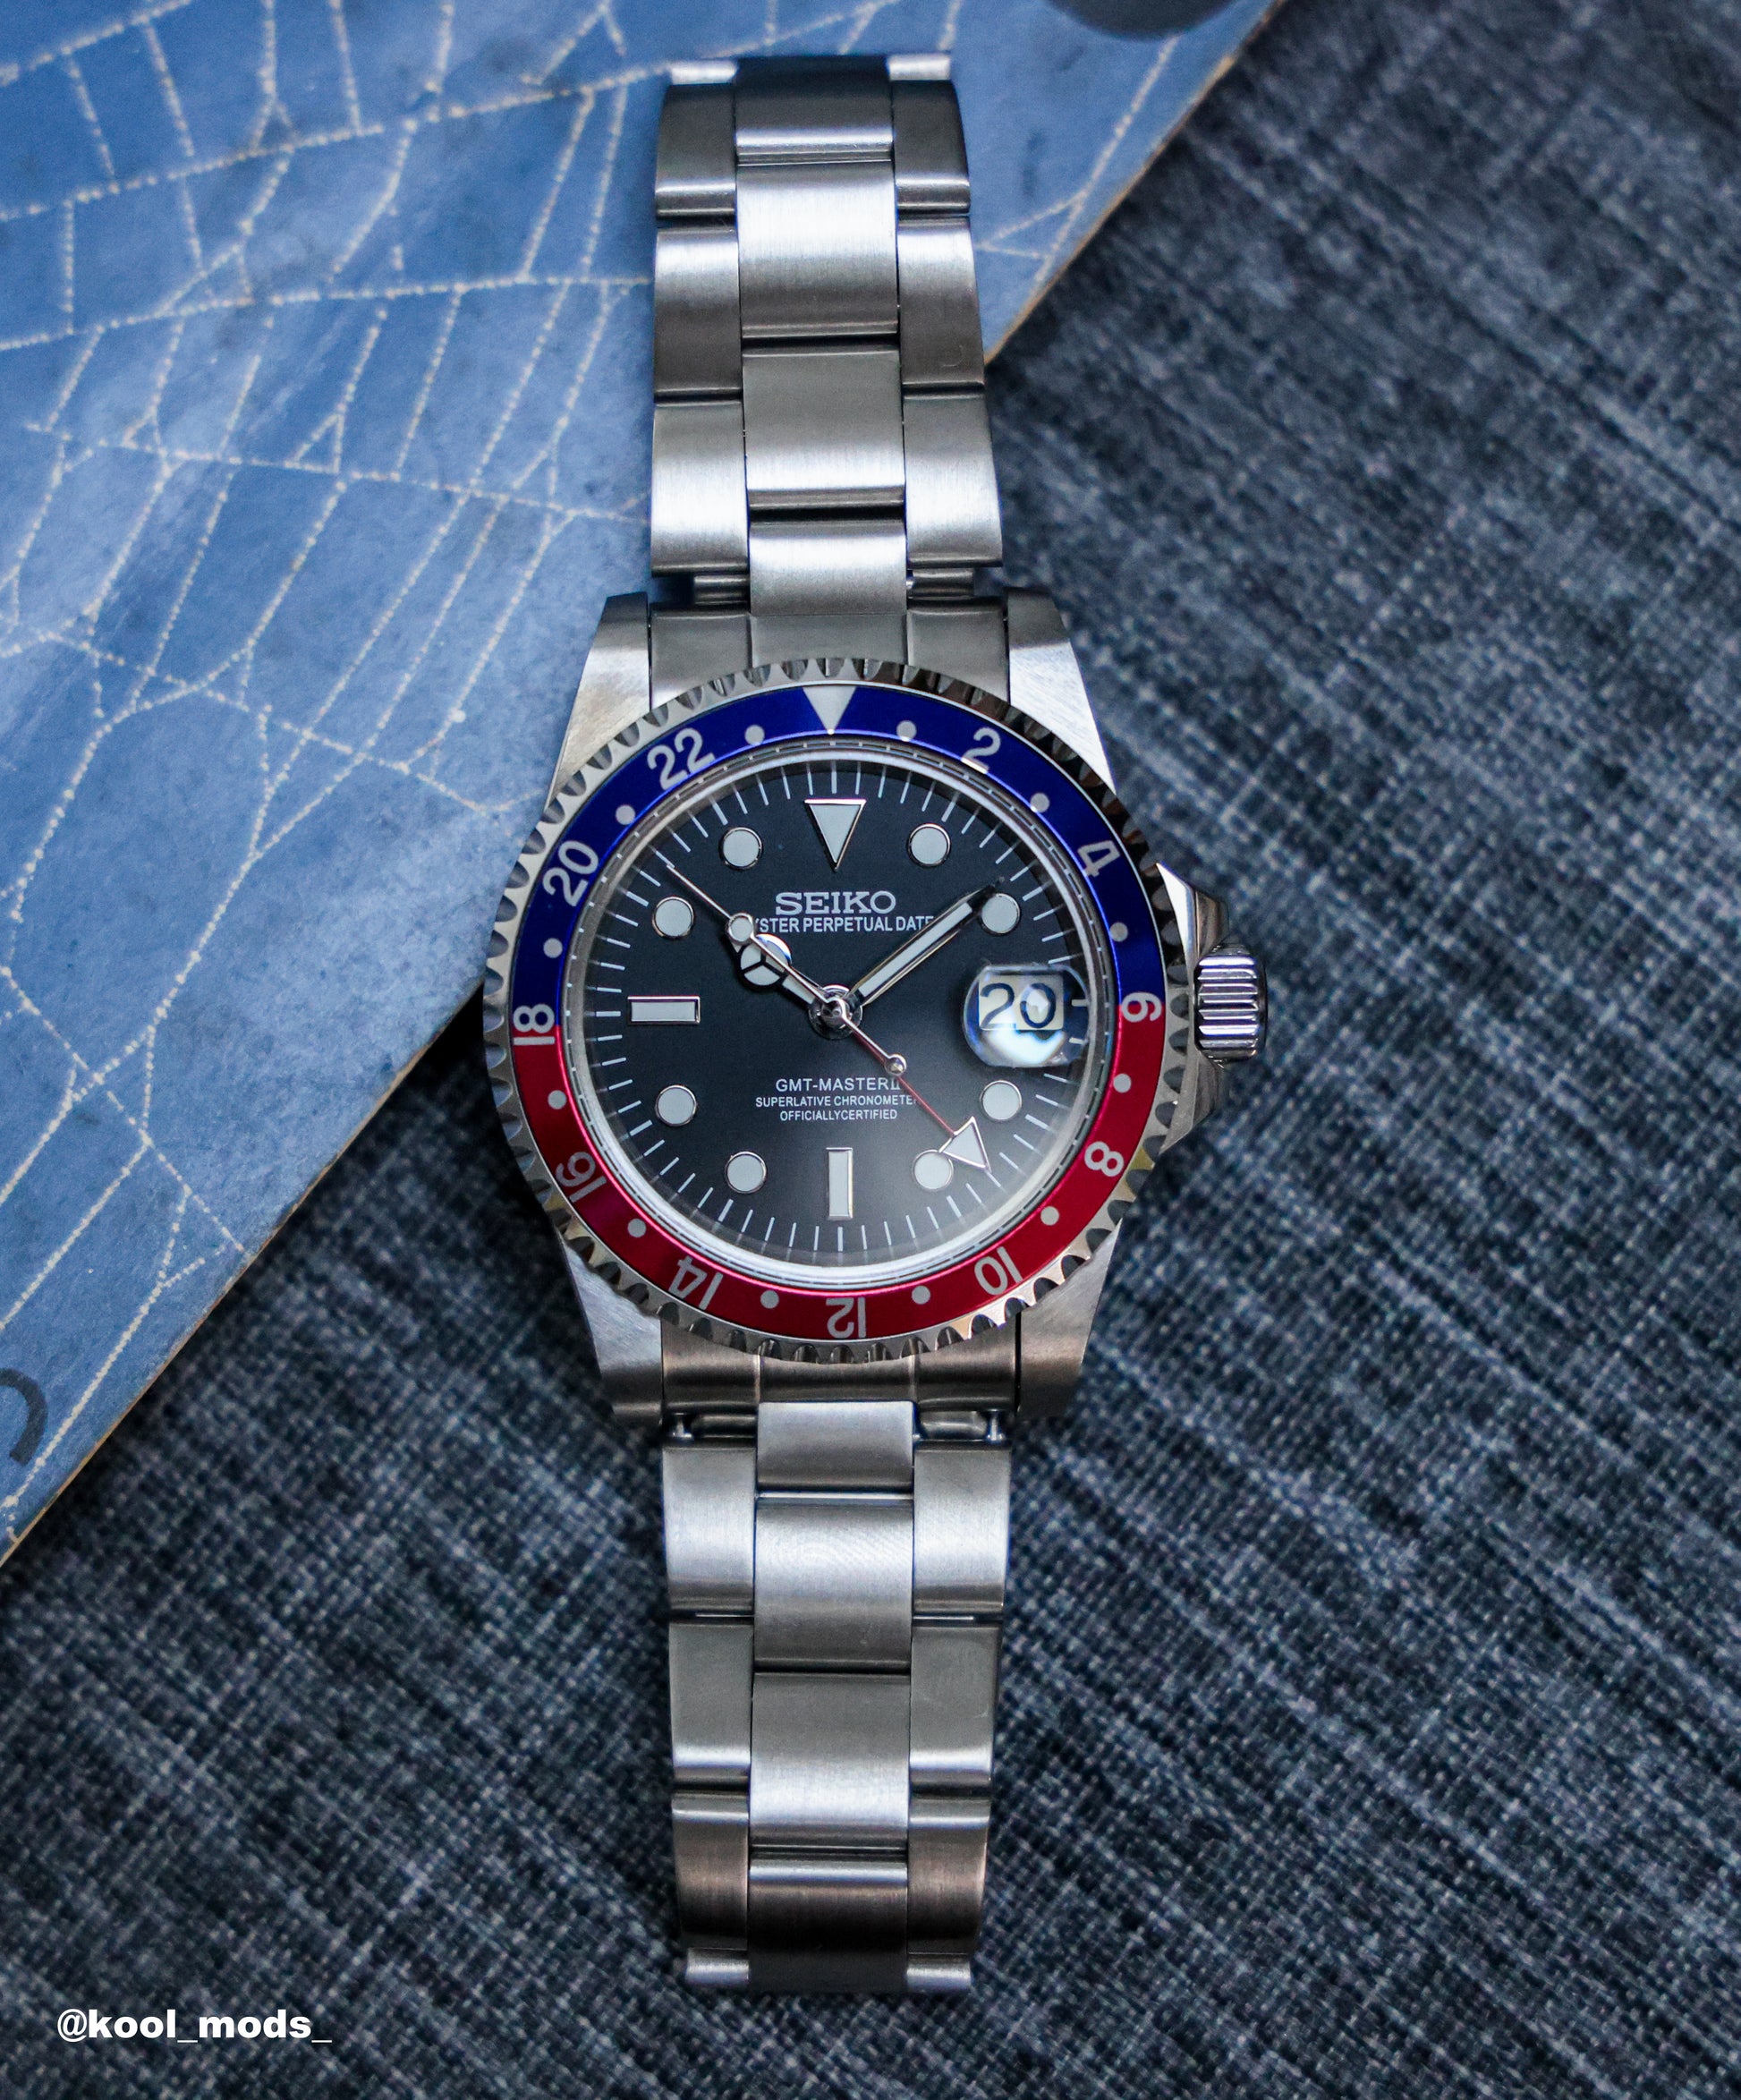 Custom Seiko Mod Vintage 'GMT' Watch by Kool Mods